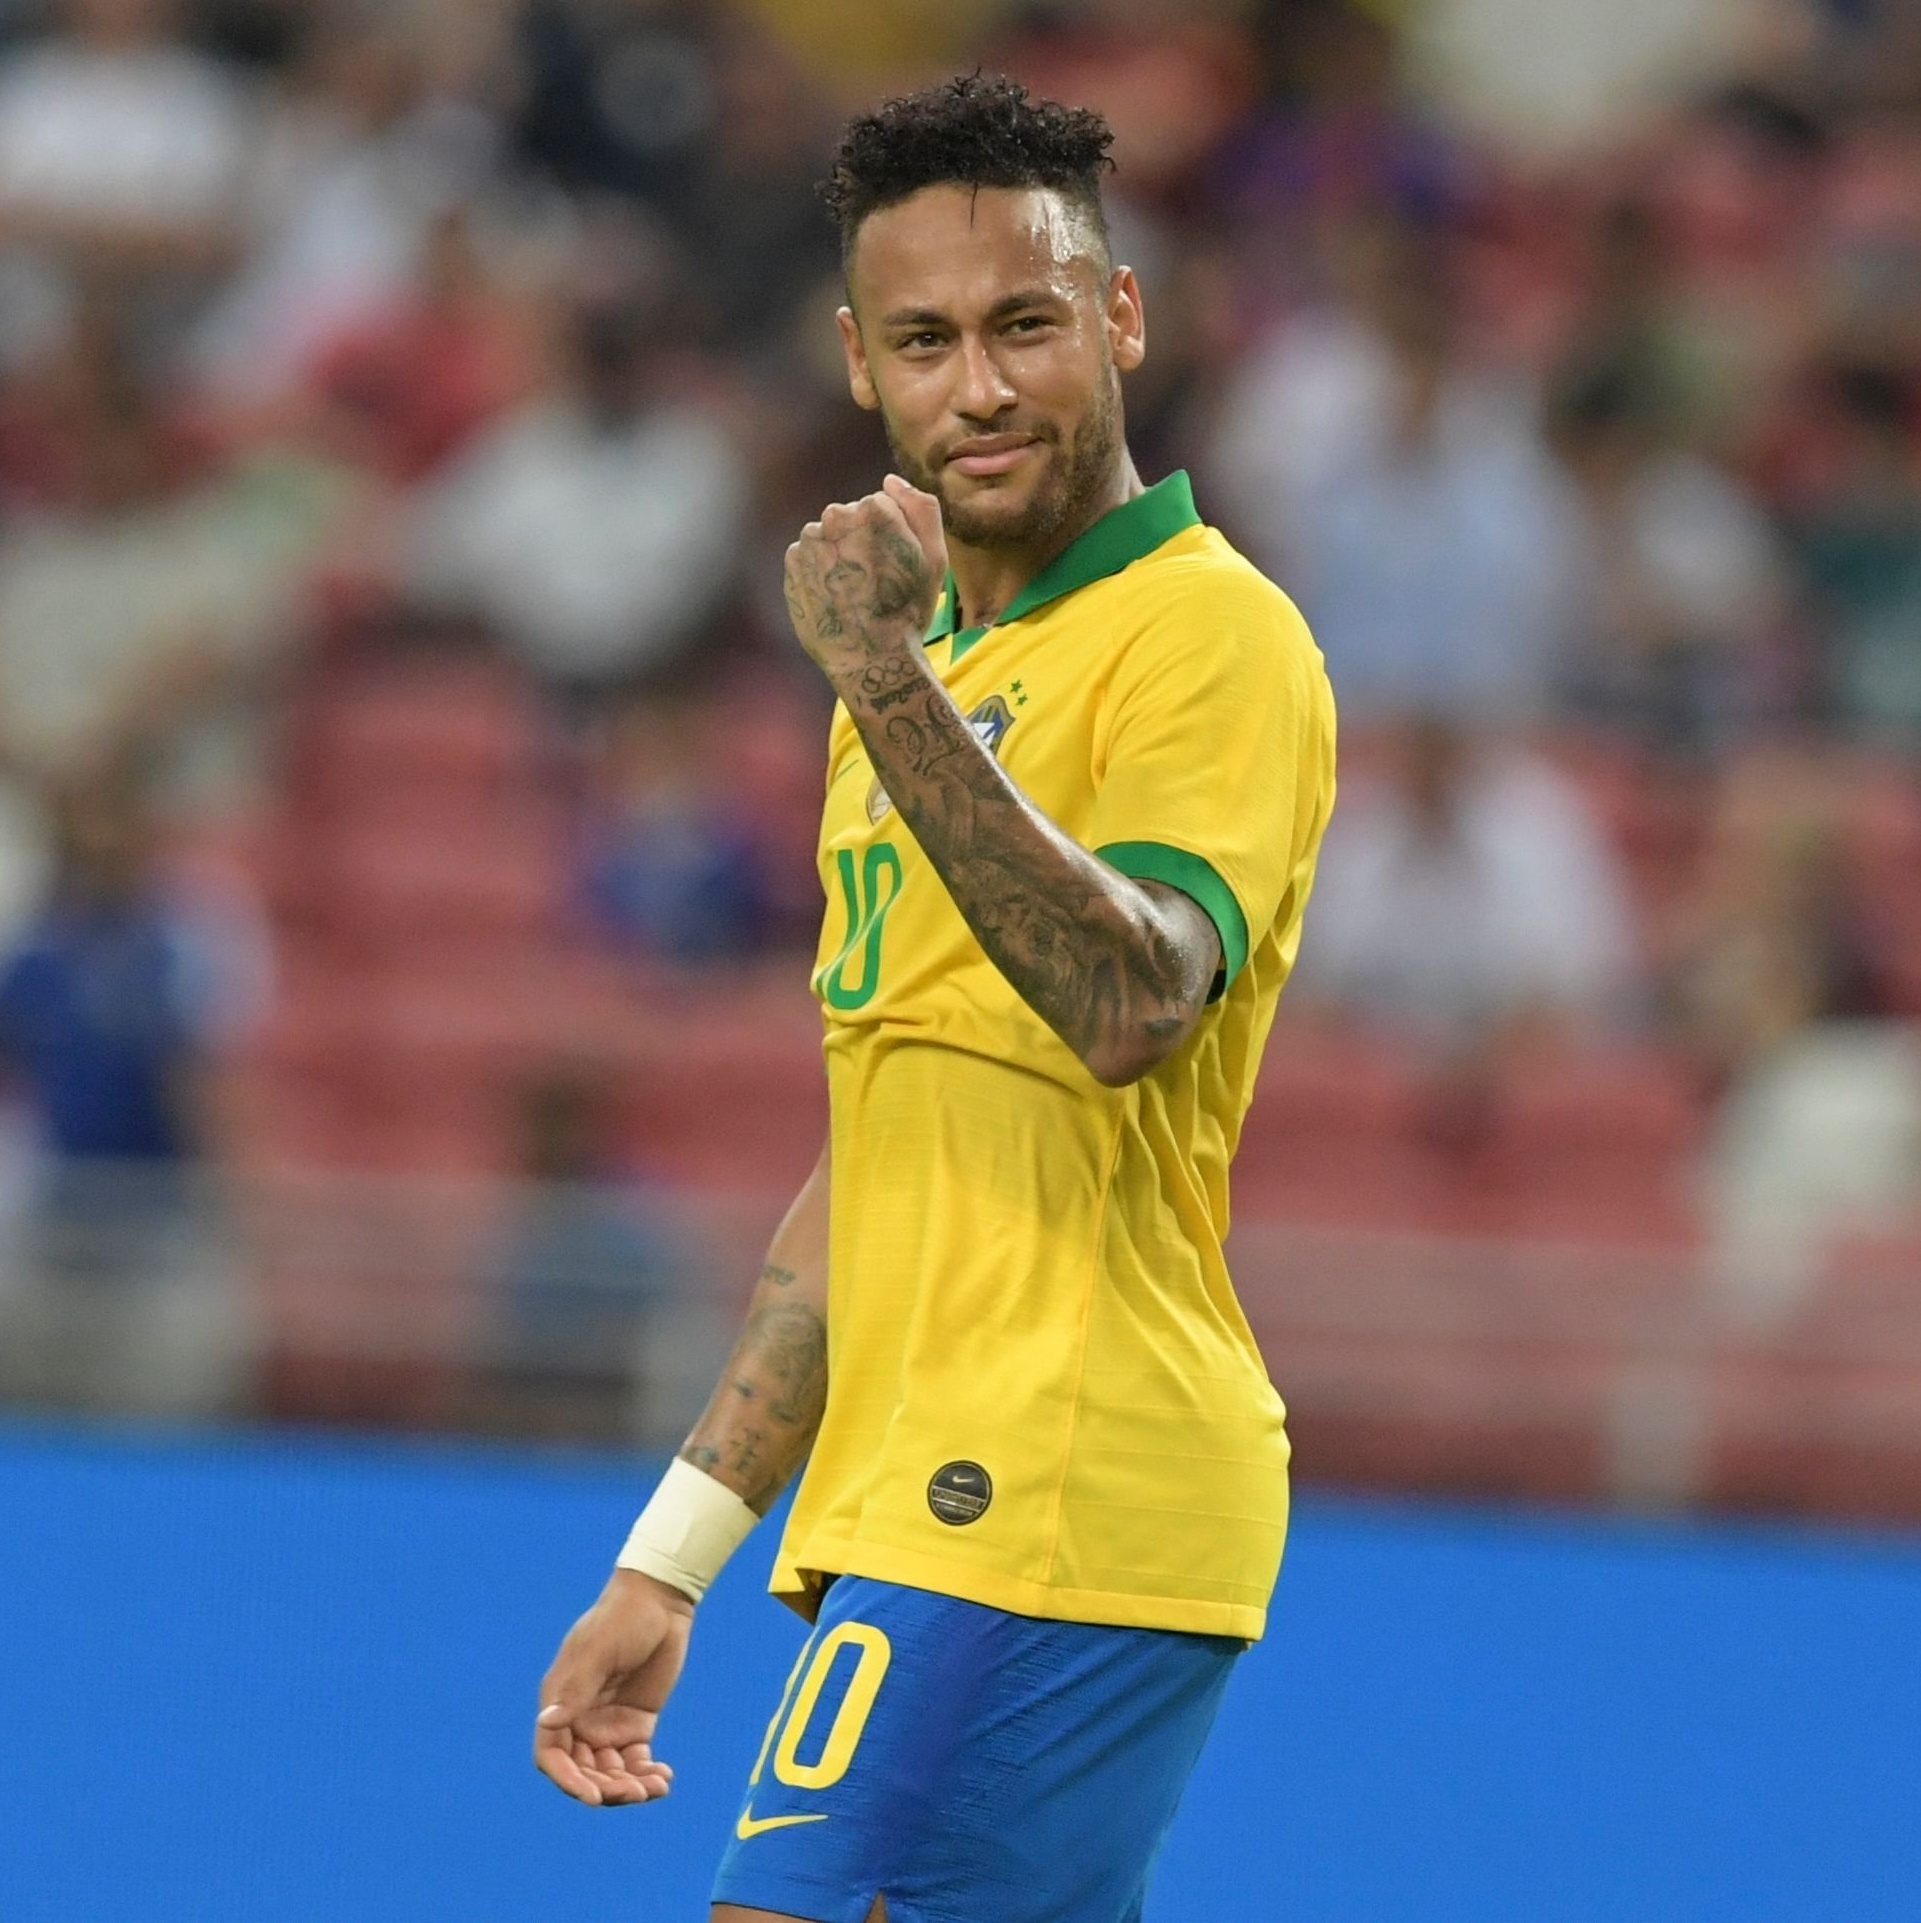 Globo desiste da transmissão de jogo entre Brasil e Peru; veja